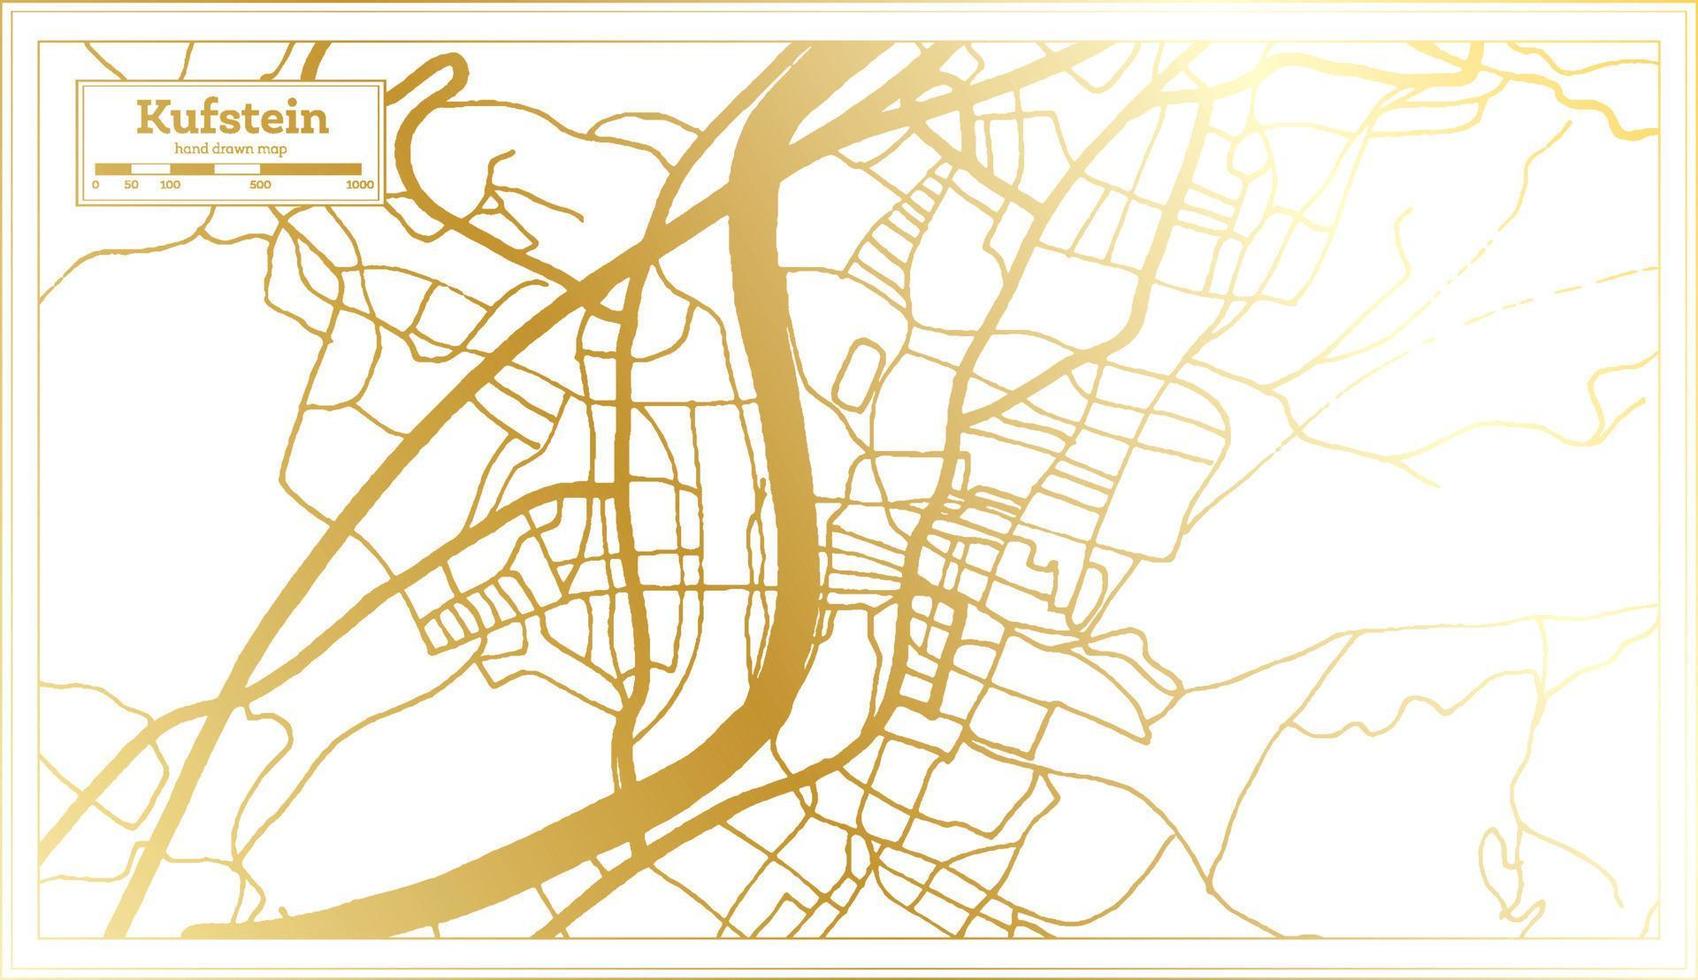 kufstein österreich stadtplan im retro style in goldener farbe. Übersichtskarte. vektor